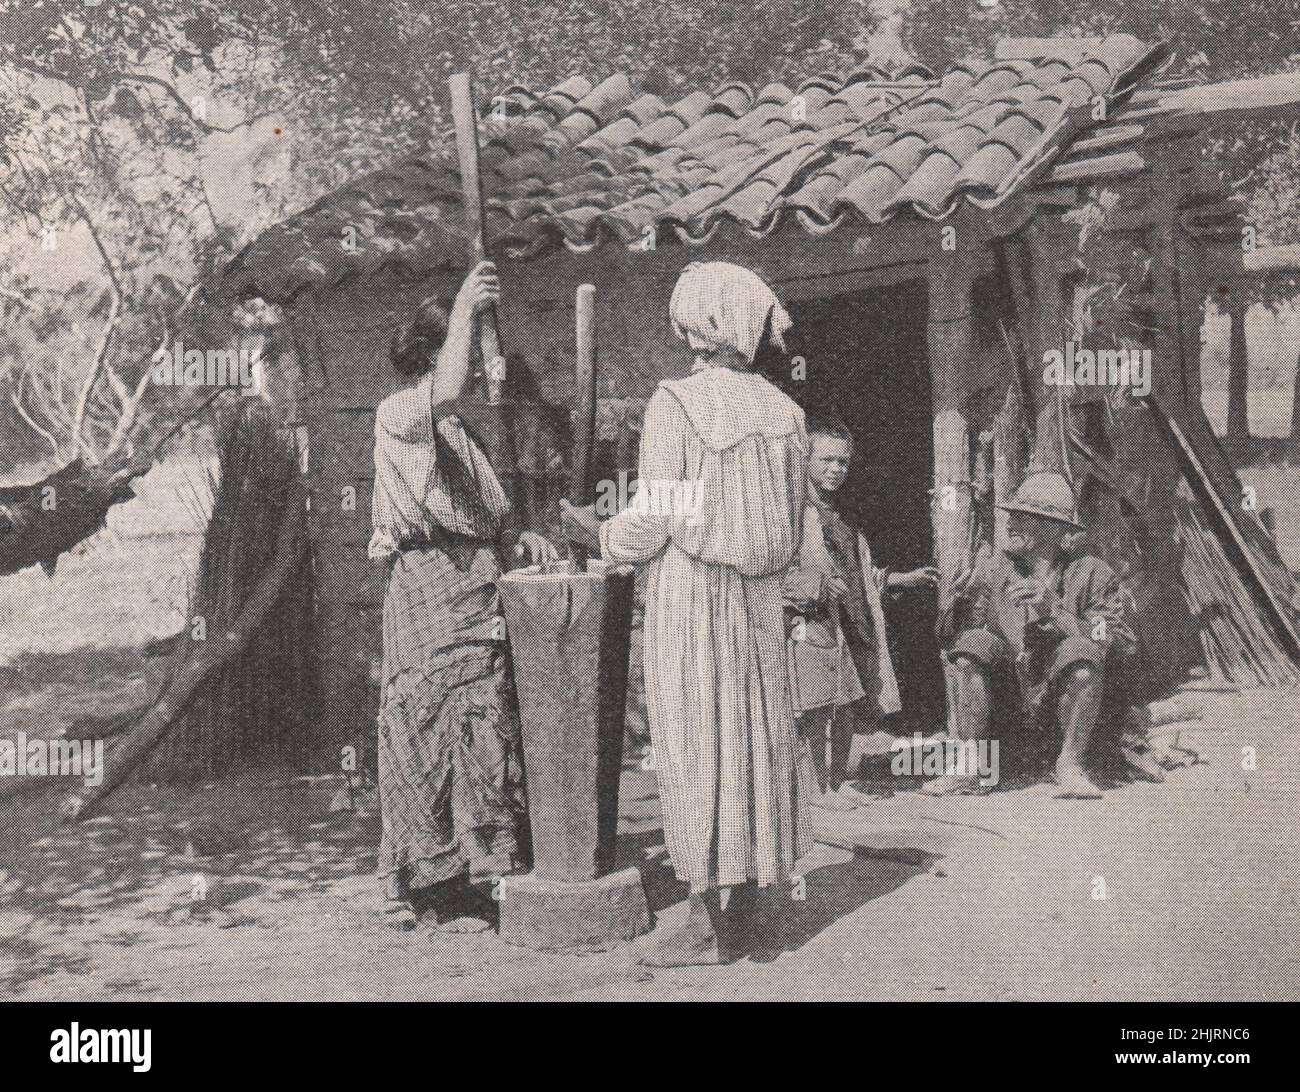 Vislumbre de la vida nacional en el desconocido Paraguay (1923) Foto de stock